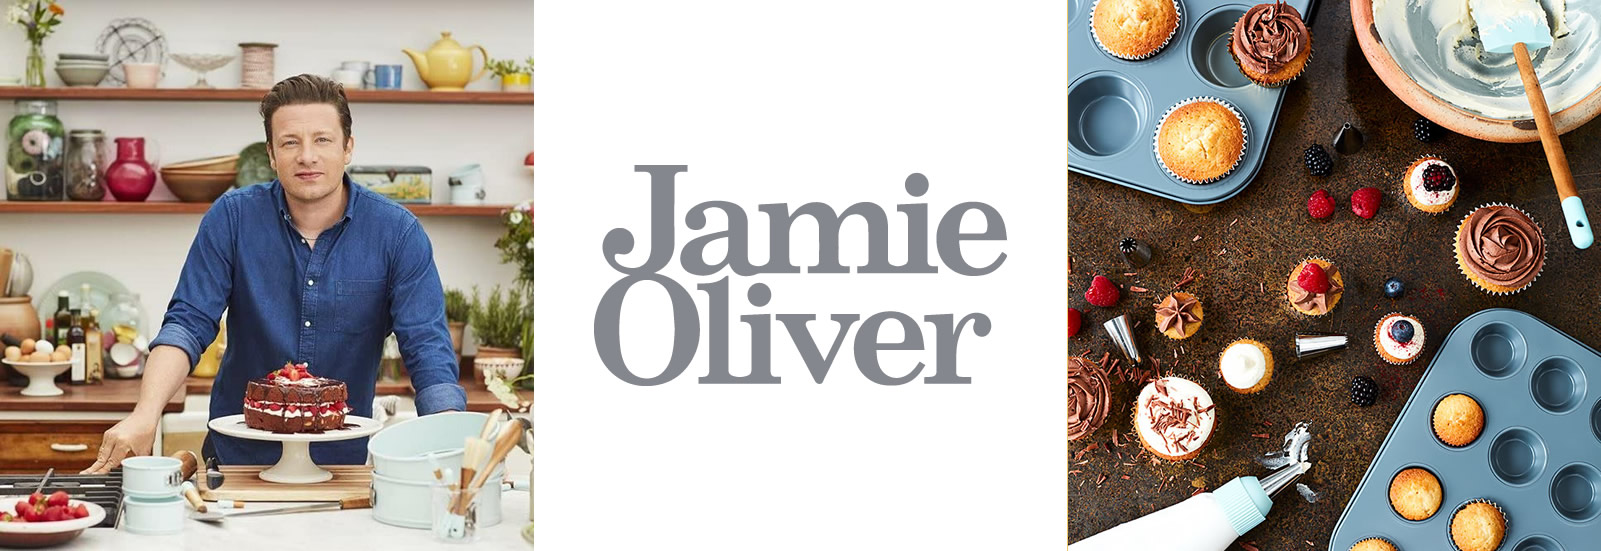 ¡Ahora podés encontrar los productos de Jamie Oliver en nuestra tienda!